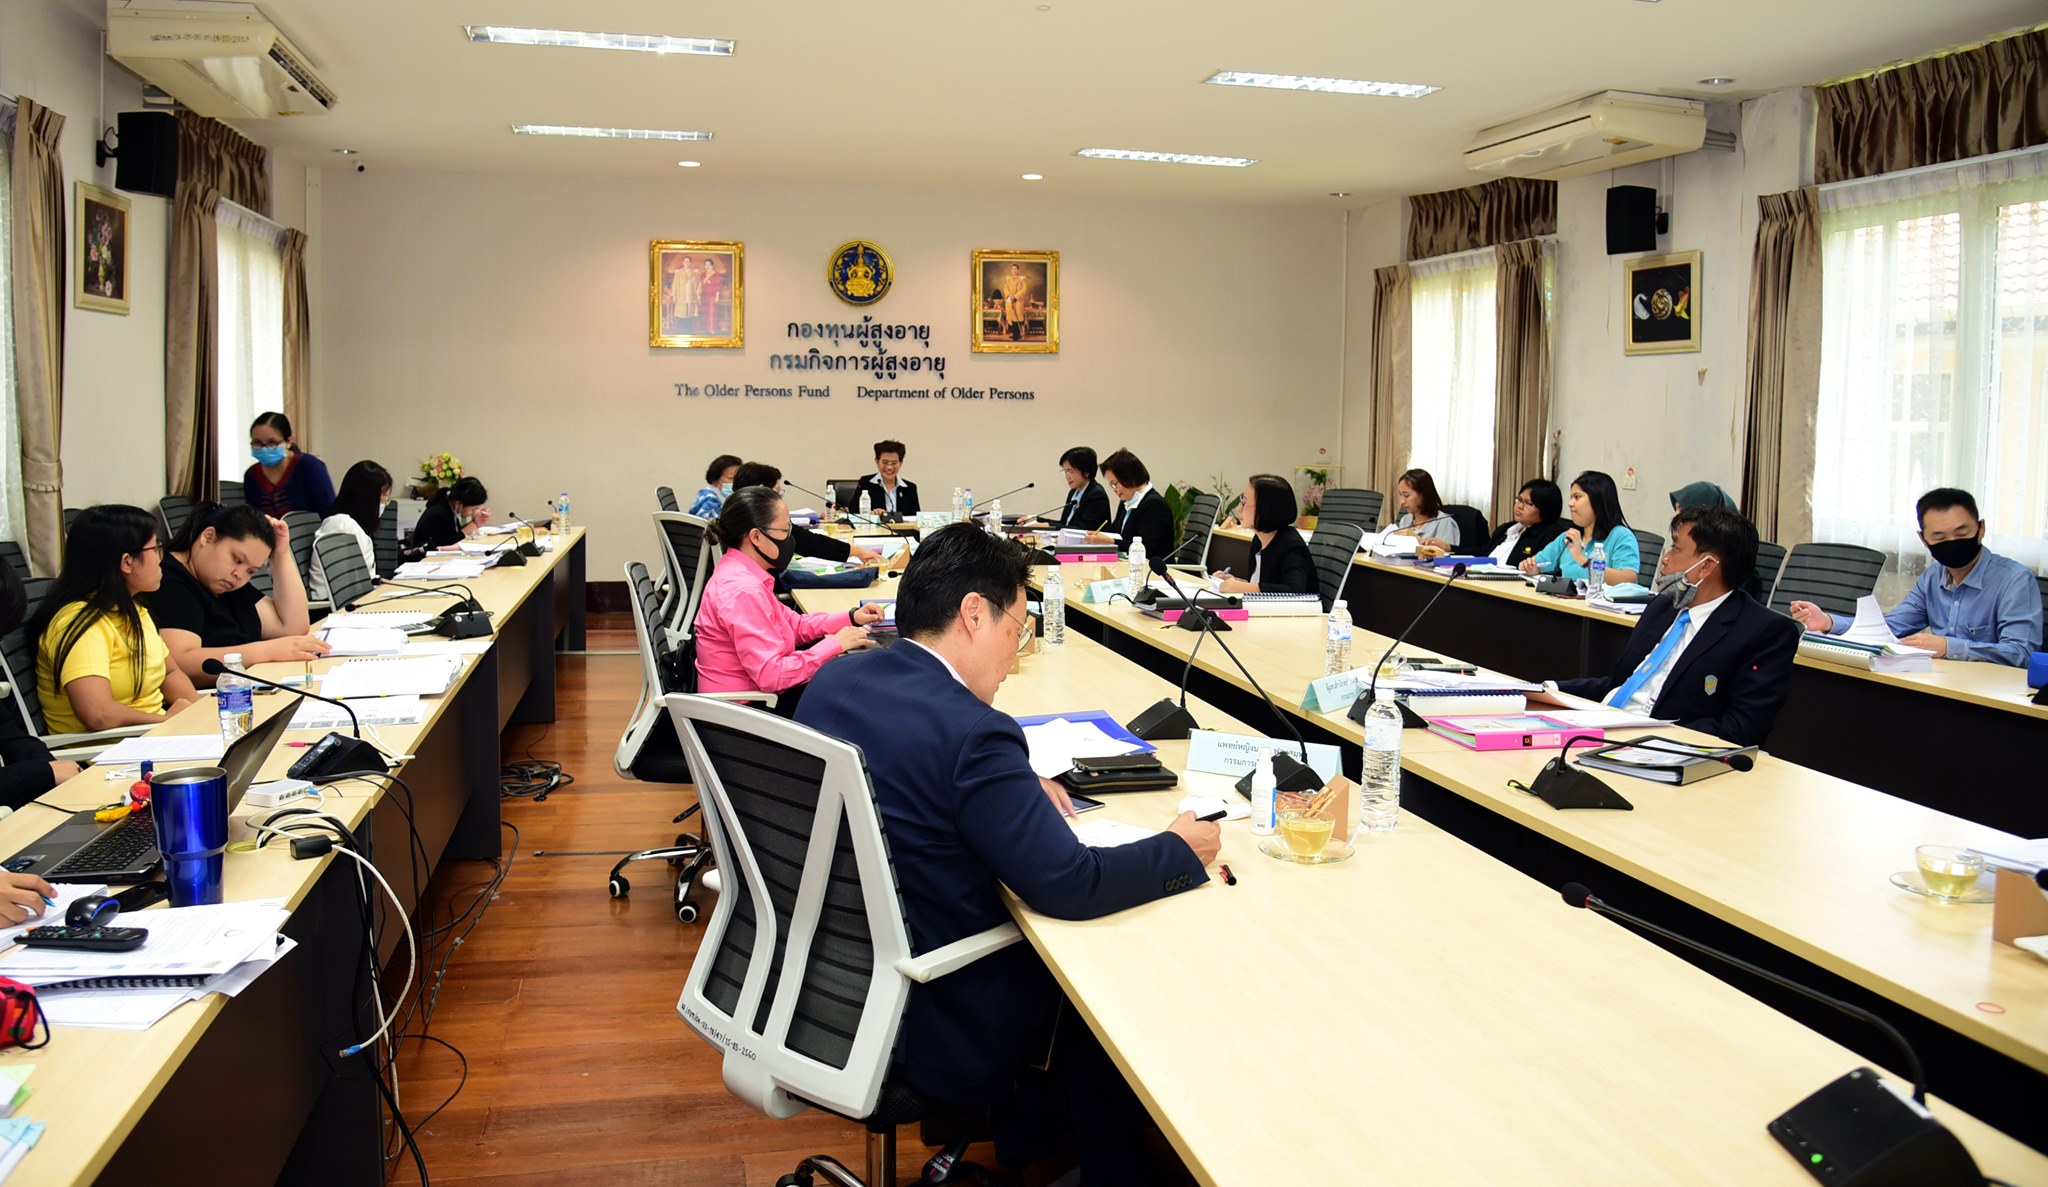 ประชุมคณะกรรมการบริหารกองทุนผู้สูงอายุ ครั้งที่ 9/2563